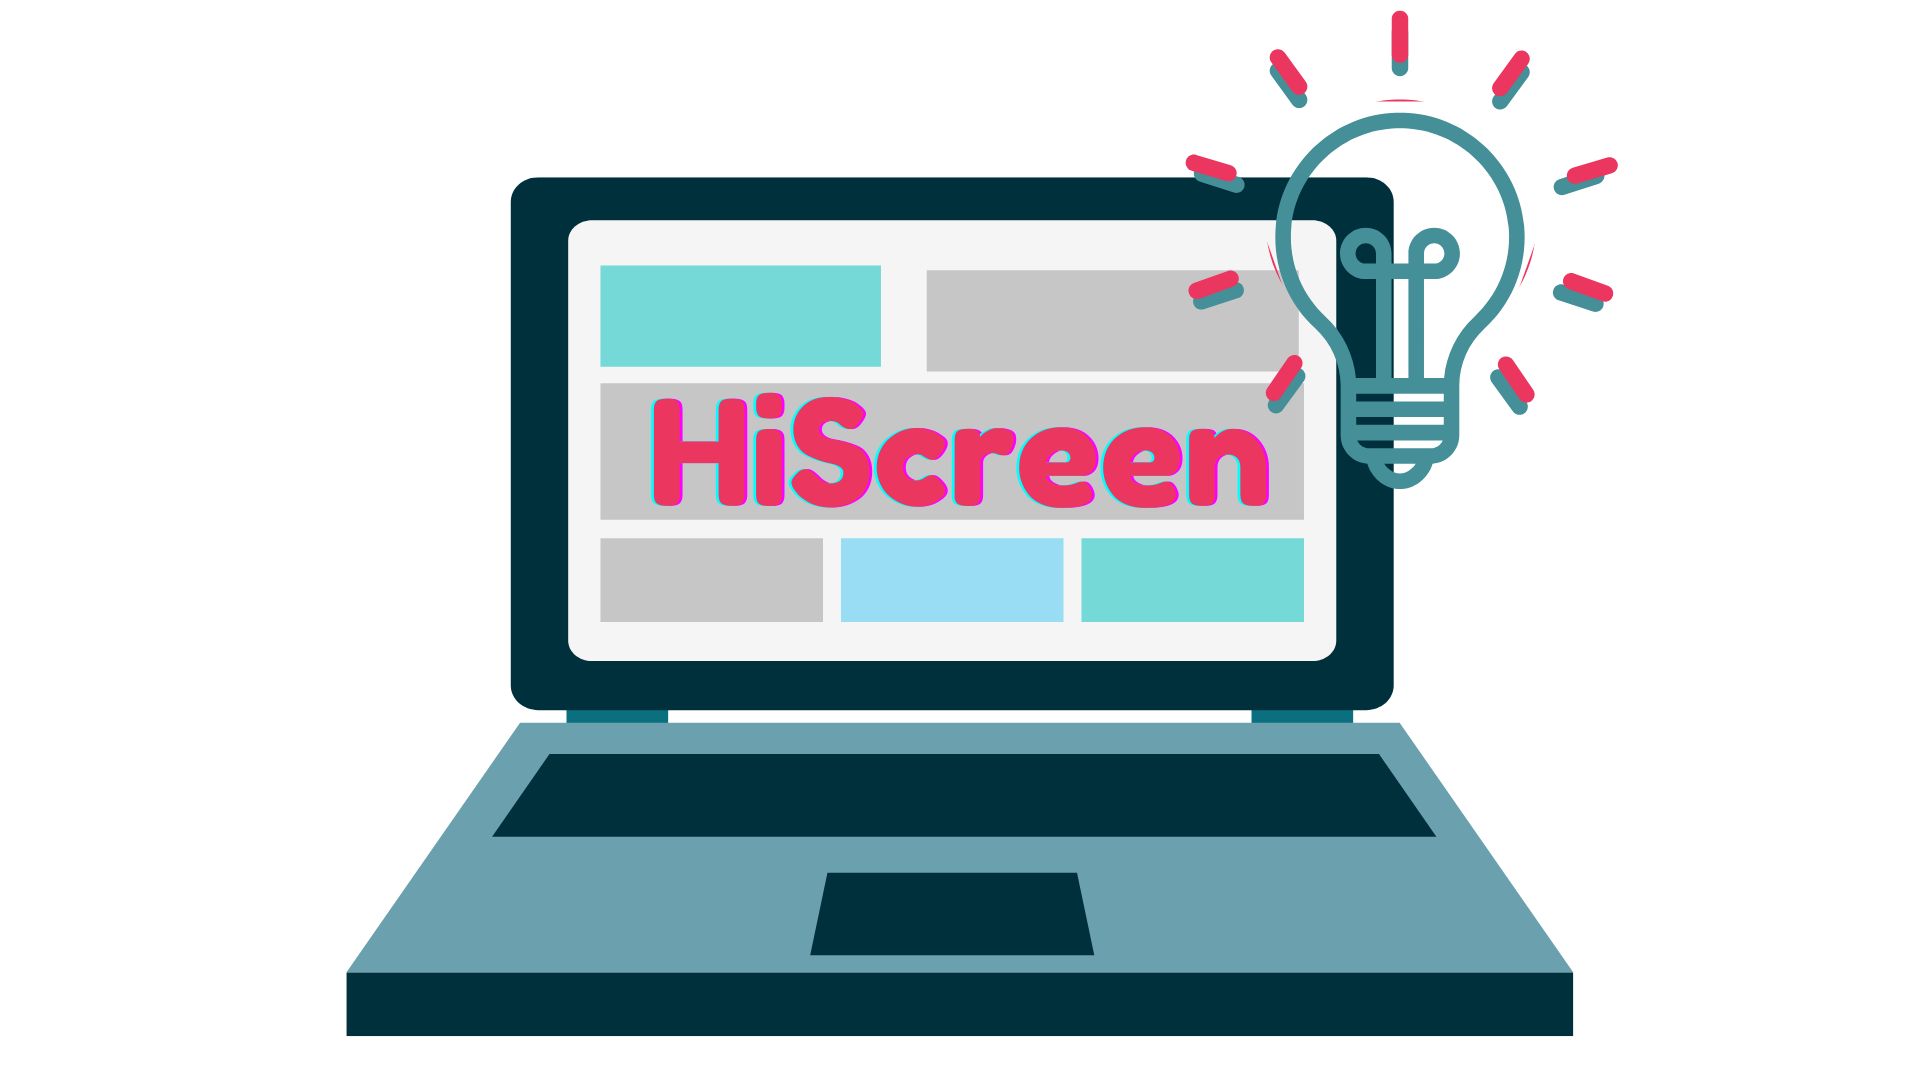 Portátil com HiScreen e Lãmpada